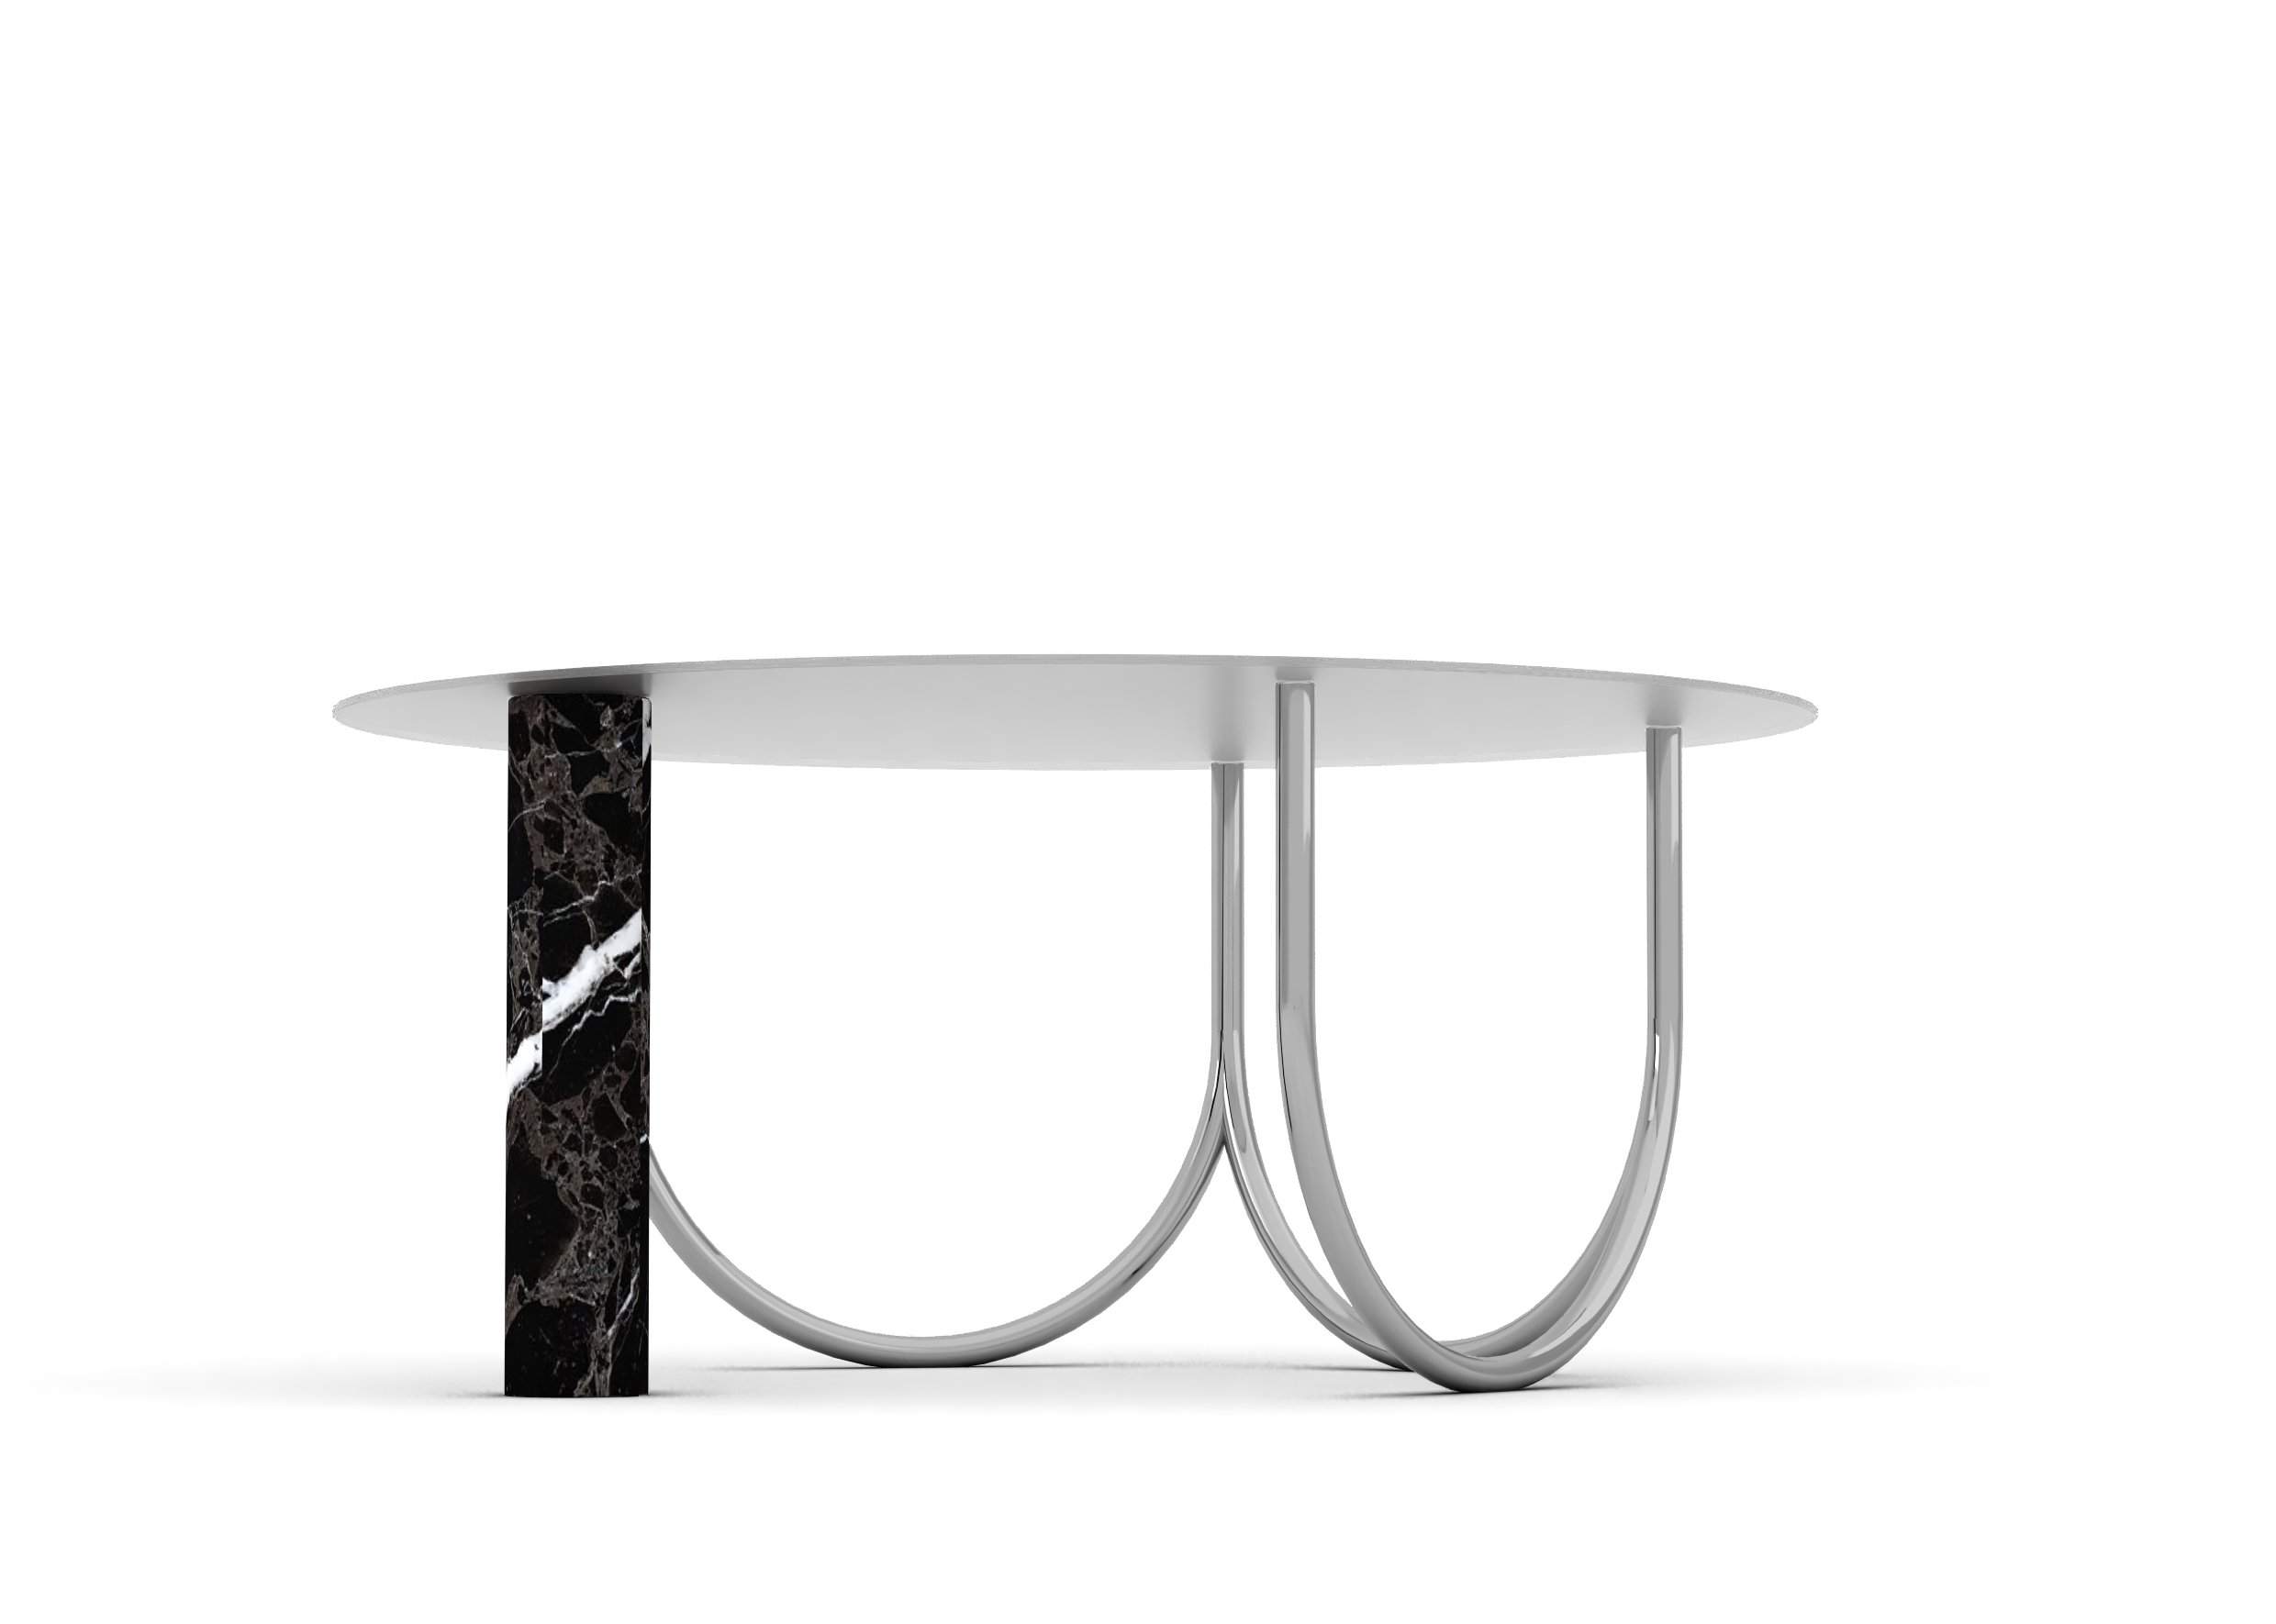 consultente arredo, furniture consultant, table designer, luxury table designer, custom table design, marble table design, contemporary table design, unique table design, contemporary round table